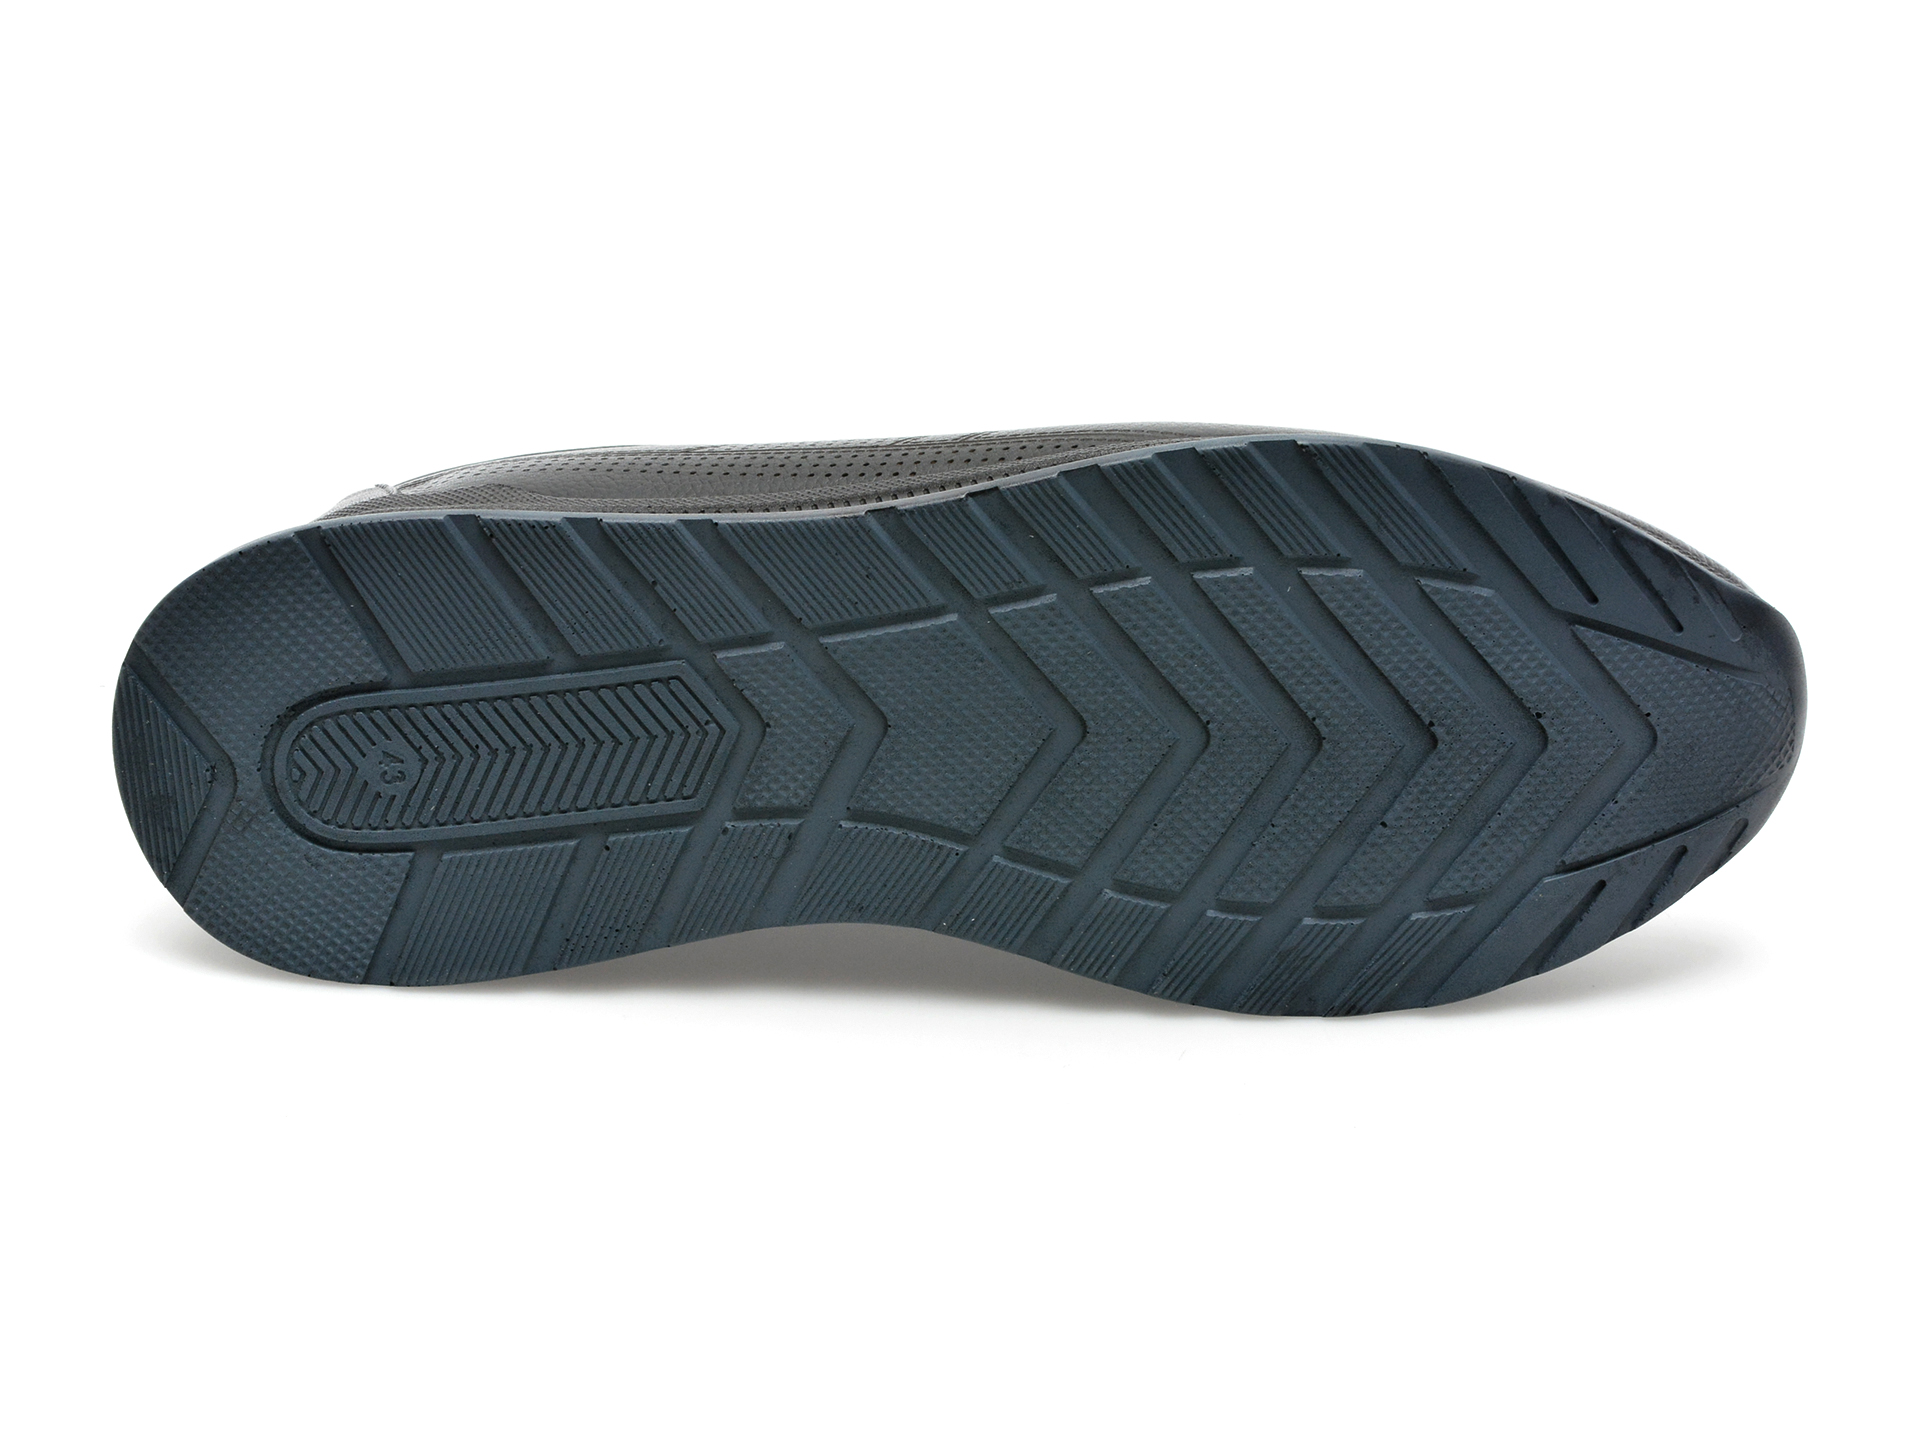 Pantofi AXXELLL negri, OY504A, din piele naturala